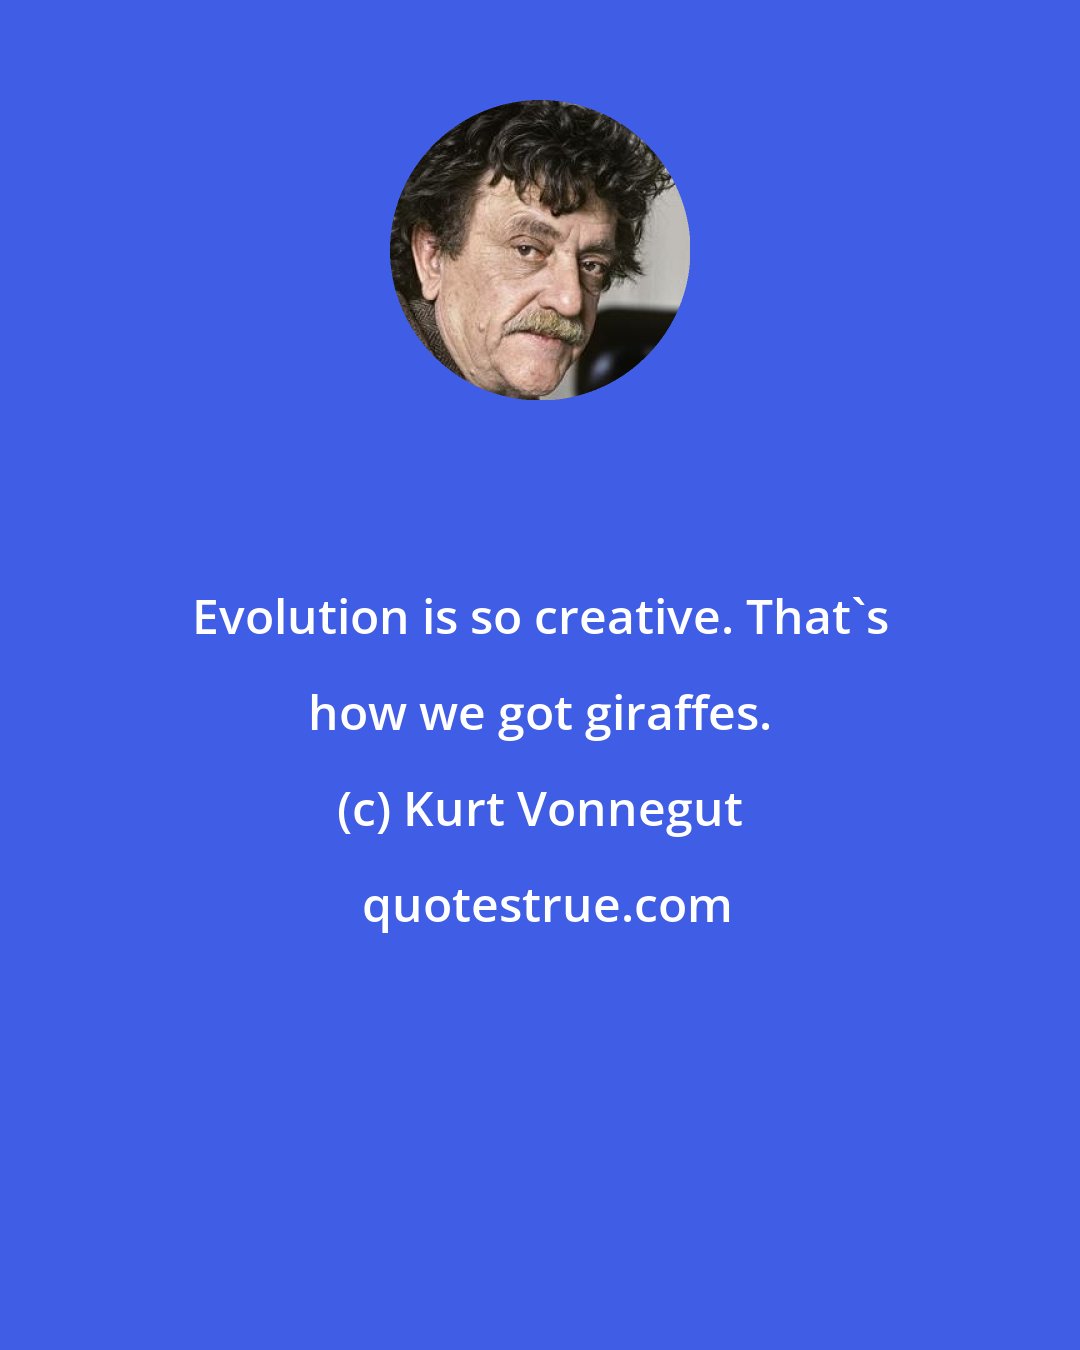 Kurt Vonnegut: Evolution is so creative. That's how we got giraffes.